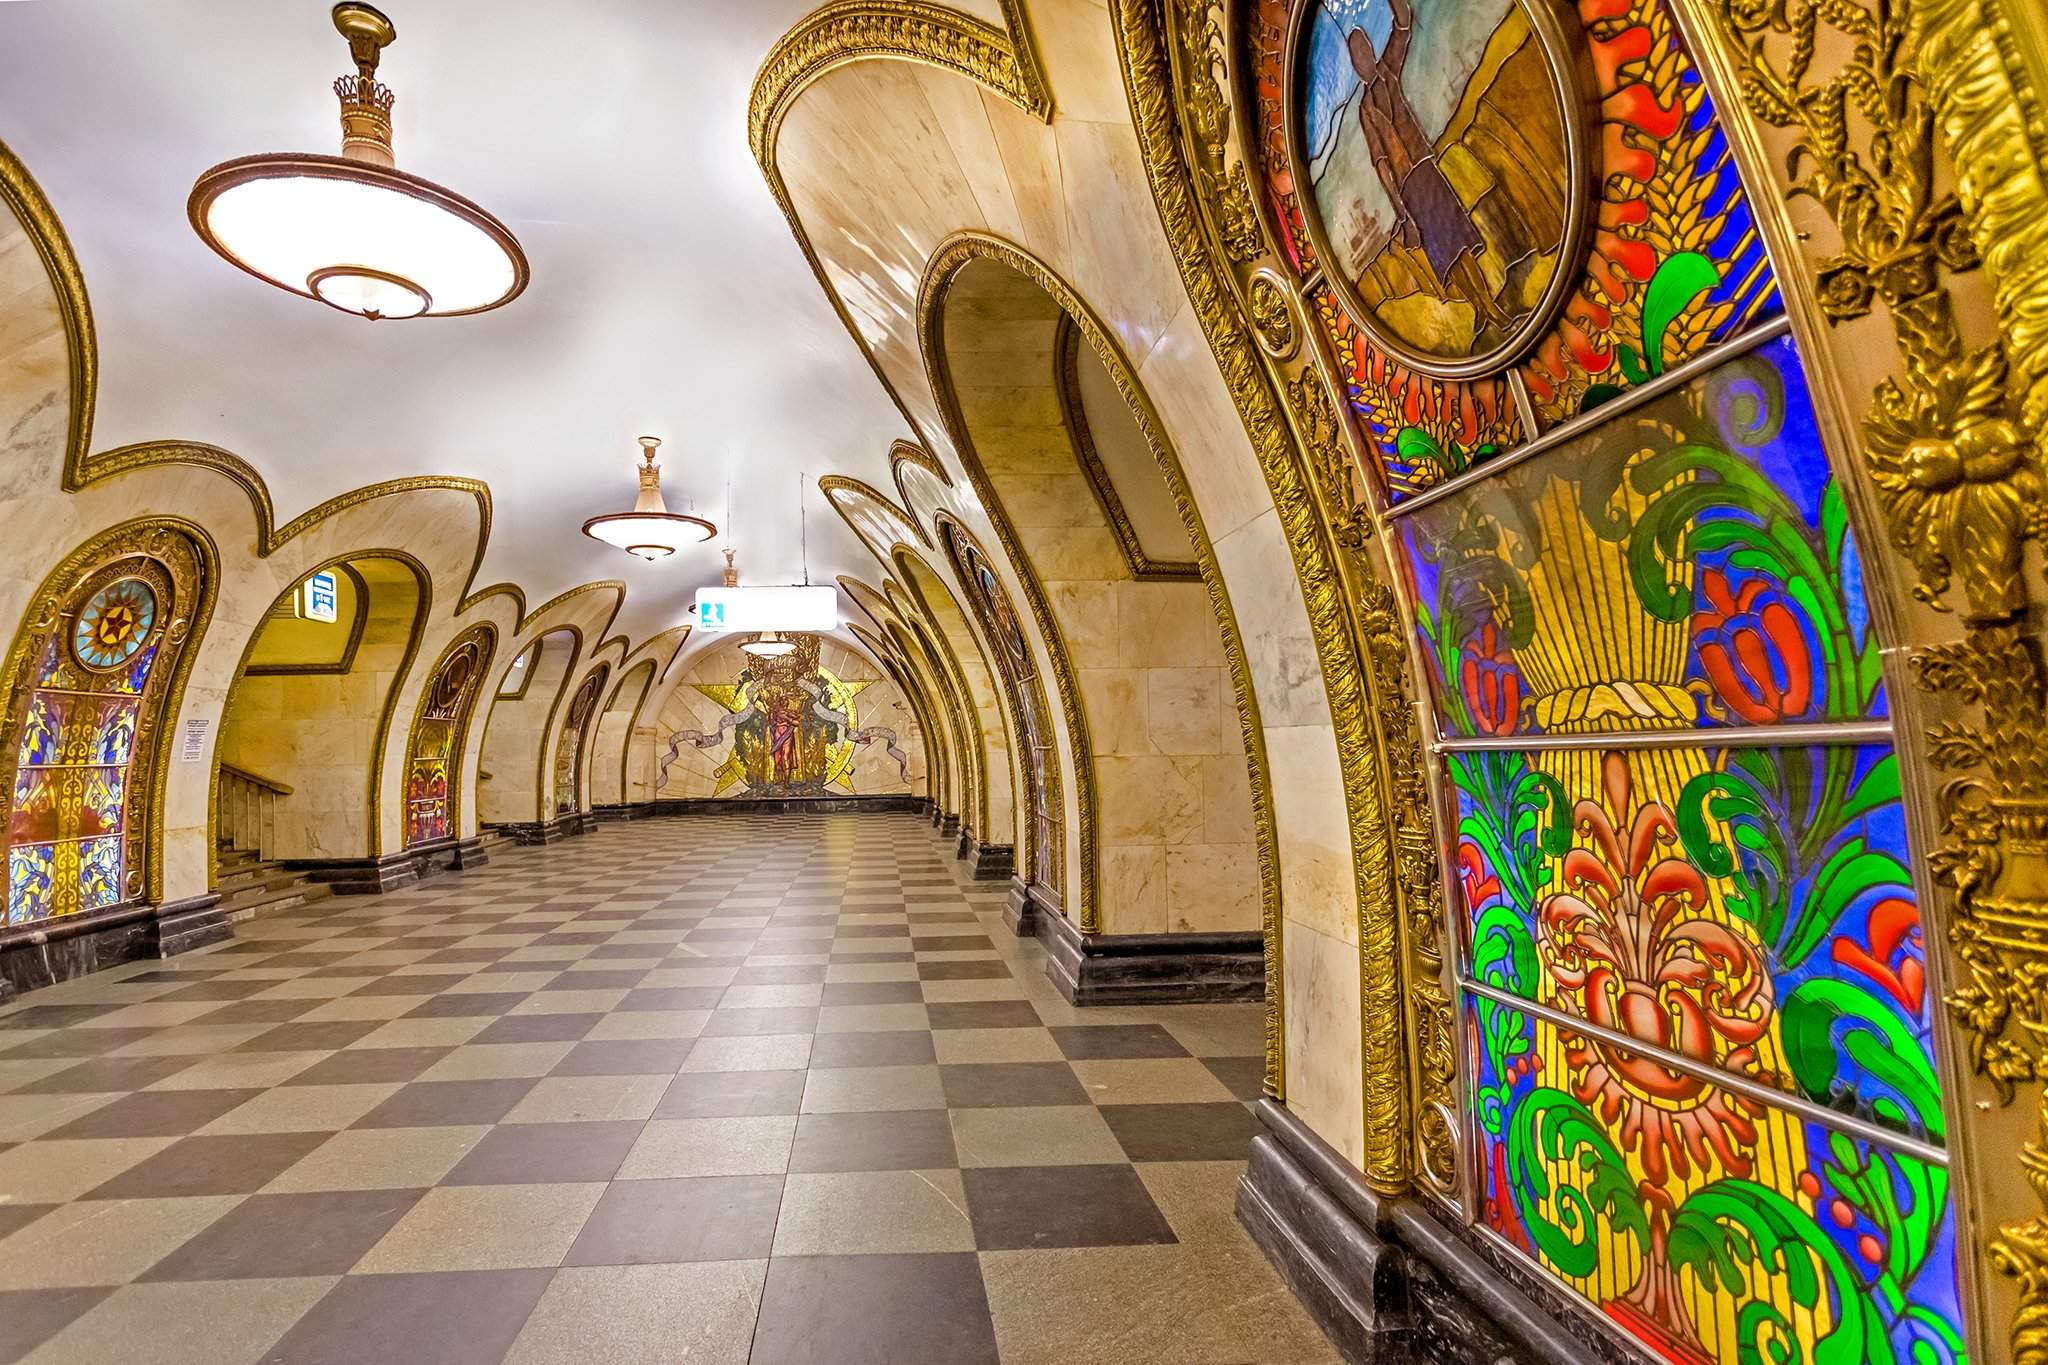 красивые станции метро москвы с названиями